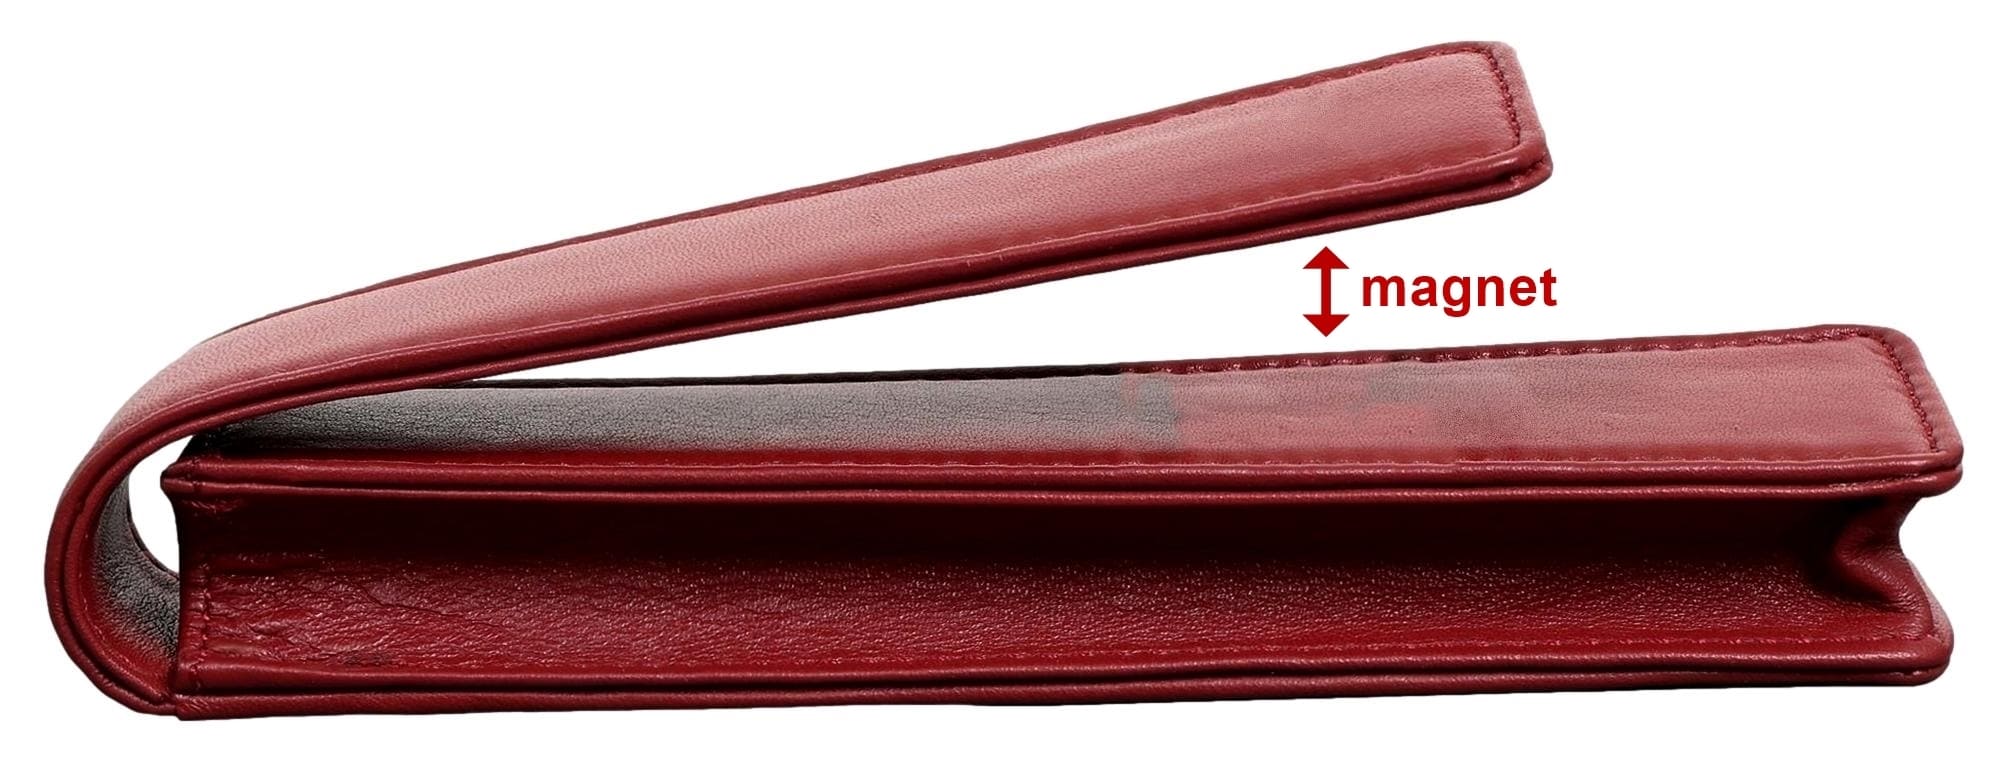 Elbleder Polo 10 - Fülleretui für drei Stifte Rot